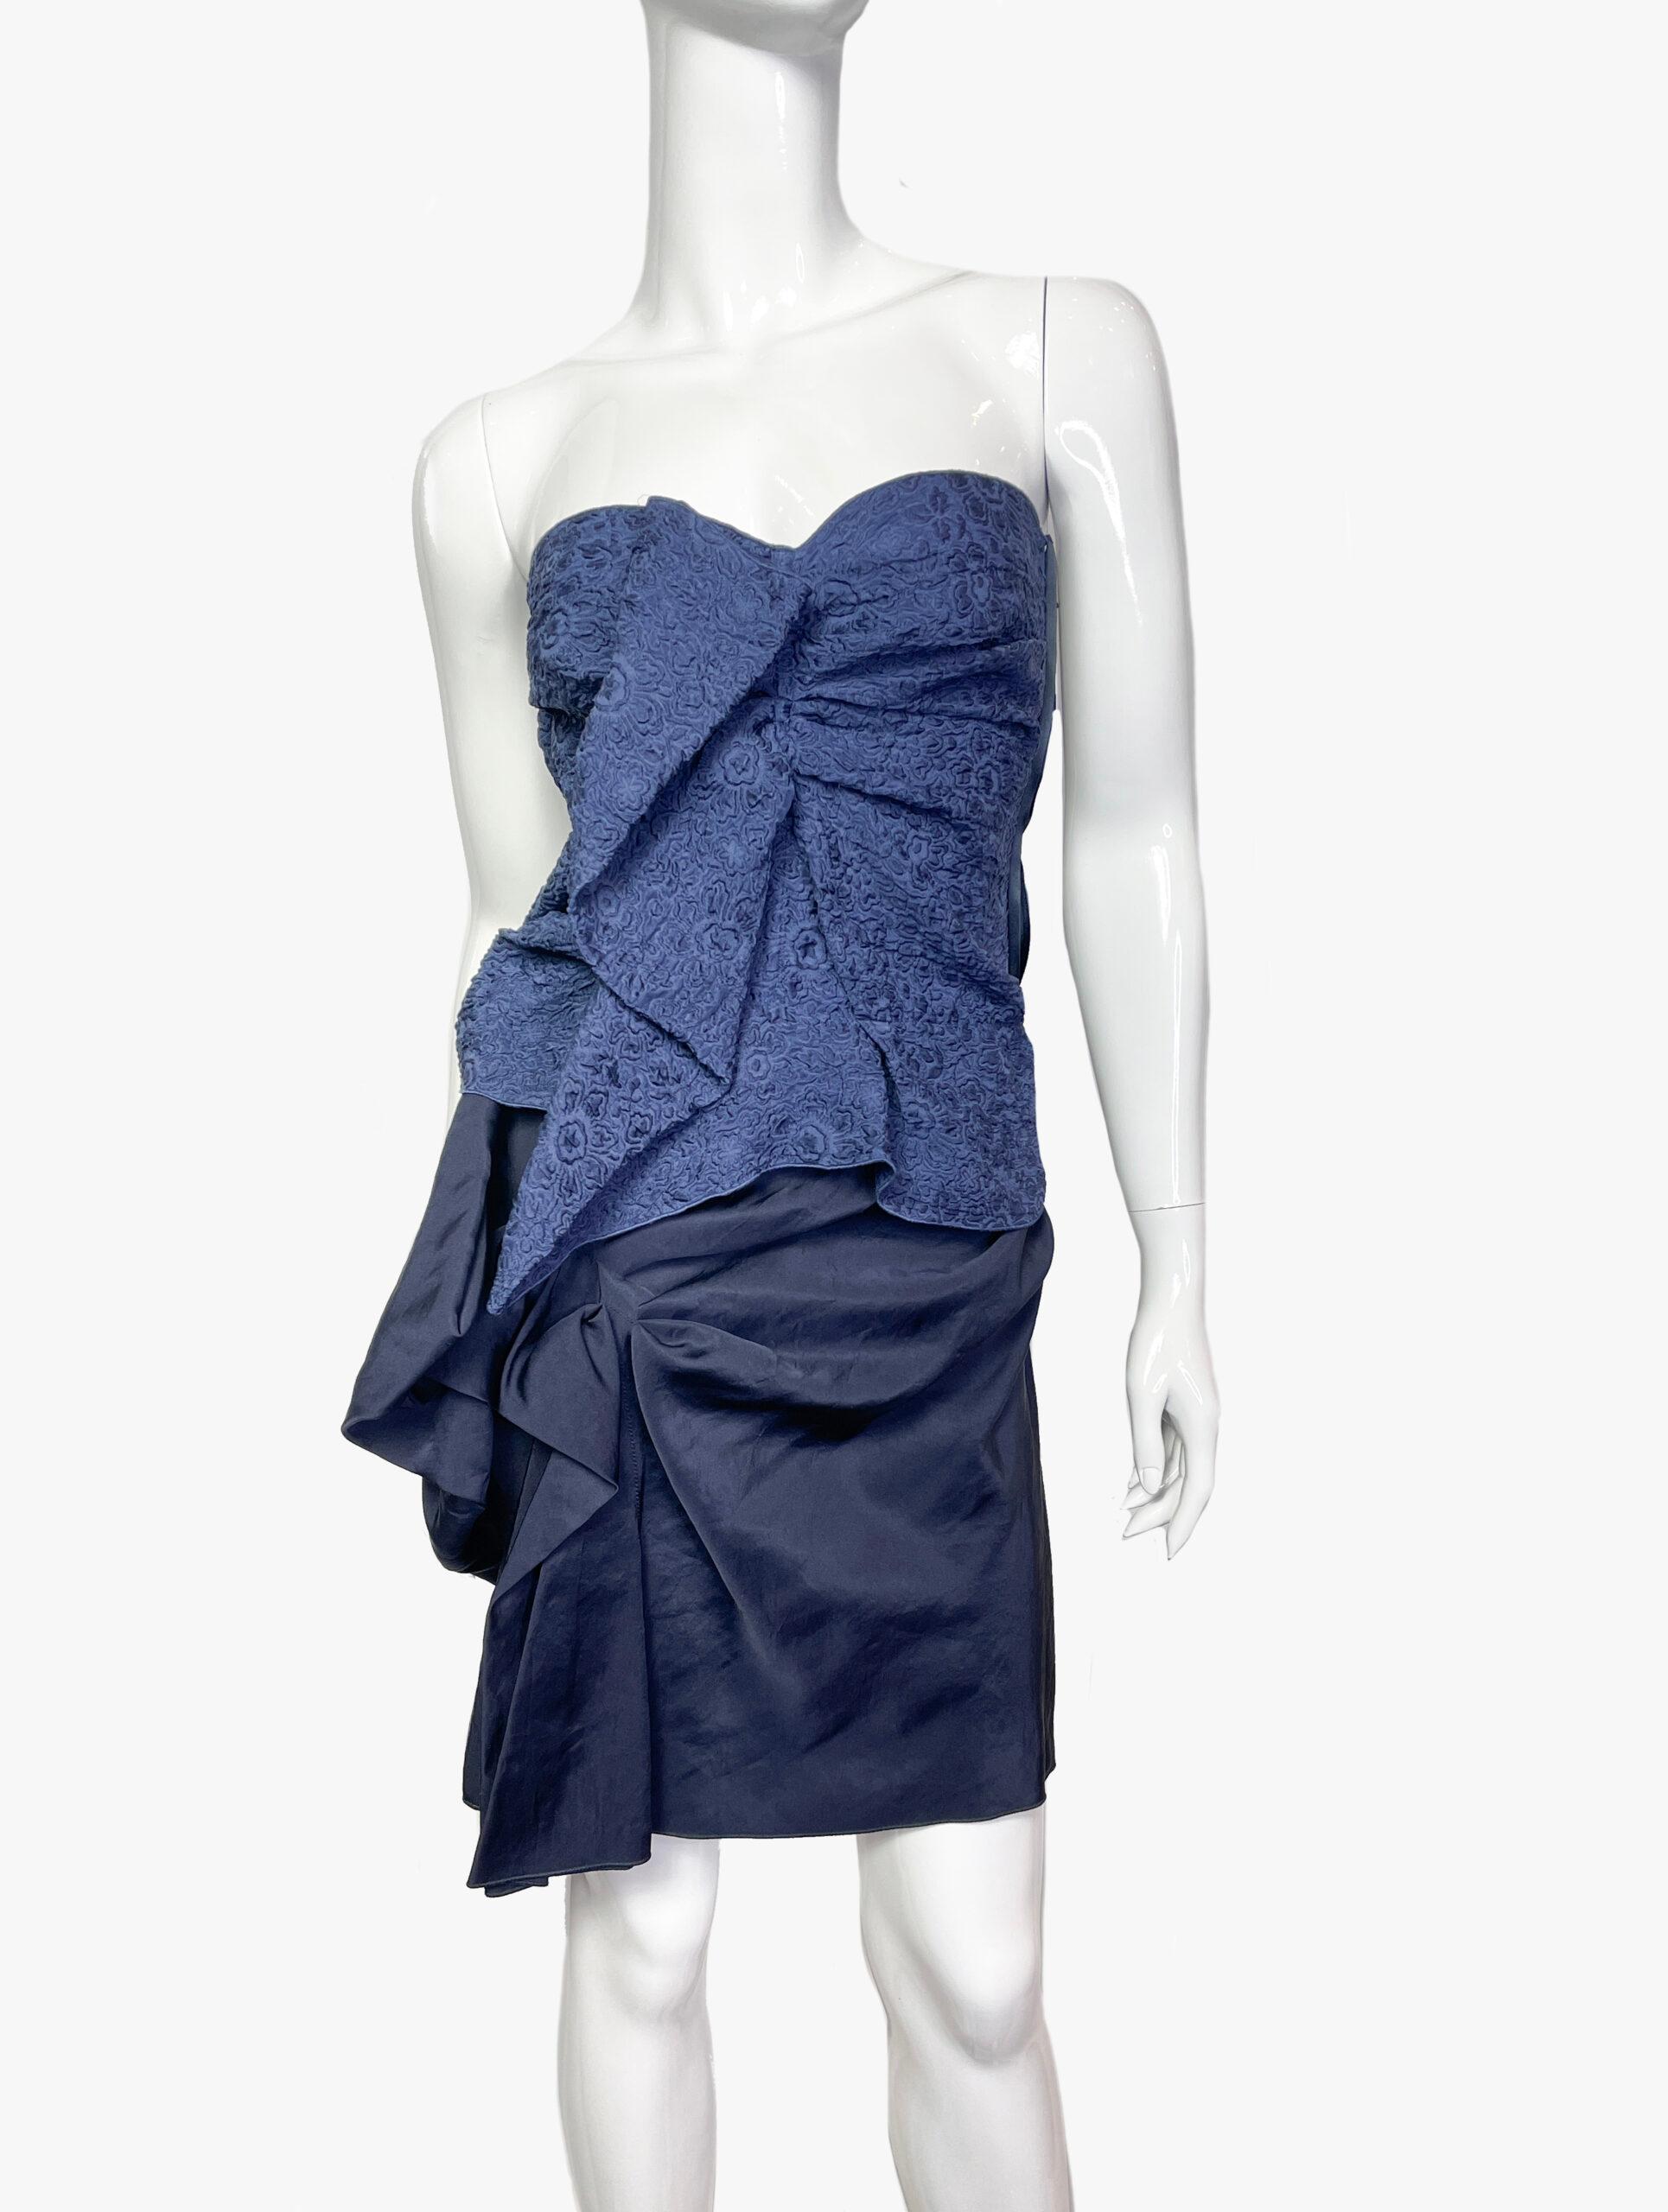 Lanvin robe bustier en soie bleu foncé, superbe robe bustier drapée
Collectional 2009
Tissu : 100% soie
Taille : 36 FR (S)

........Informations complémentaires ........

- La photo peut être légèrement différente de l'article réel en termes de